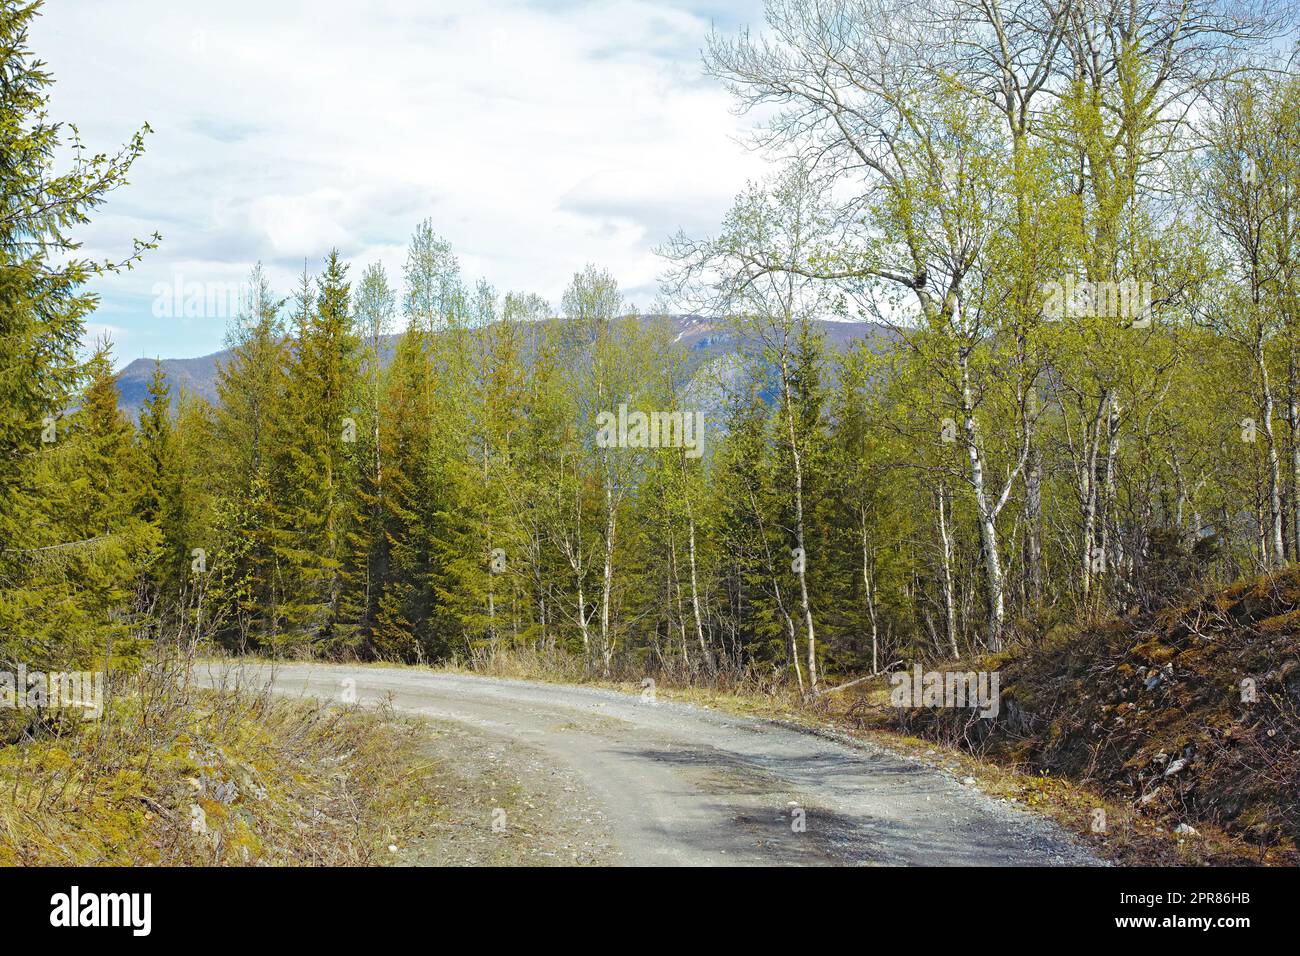 Vue sur une route et une végétation verte menant à une zone isolée dans le Nordland. De grands arbres verts entourant une rue vide à la campagne. Terres boisées désertes et forêt le long d'un chemin en béton Banque D'Images